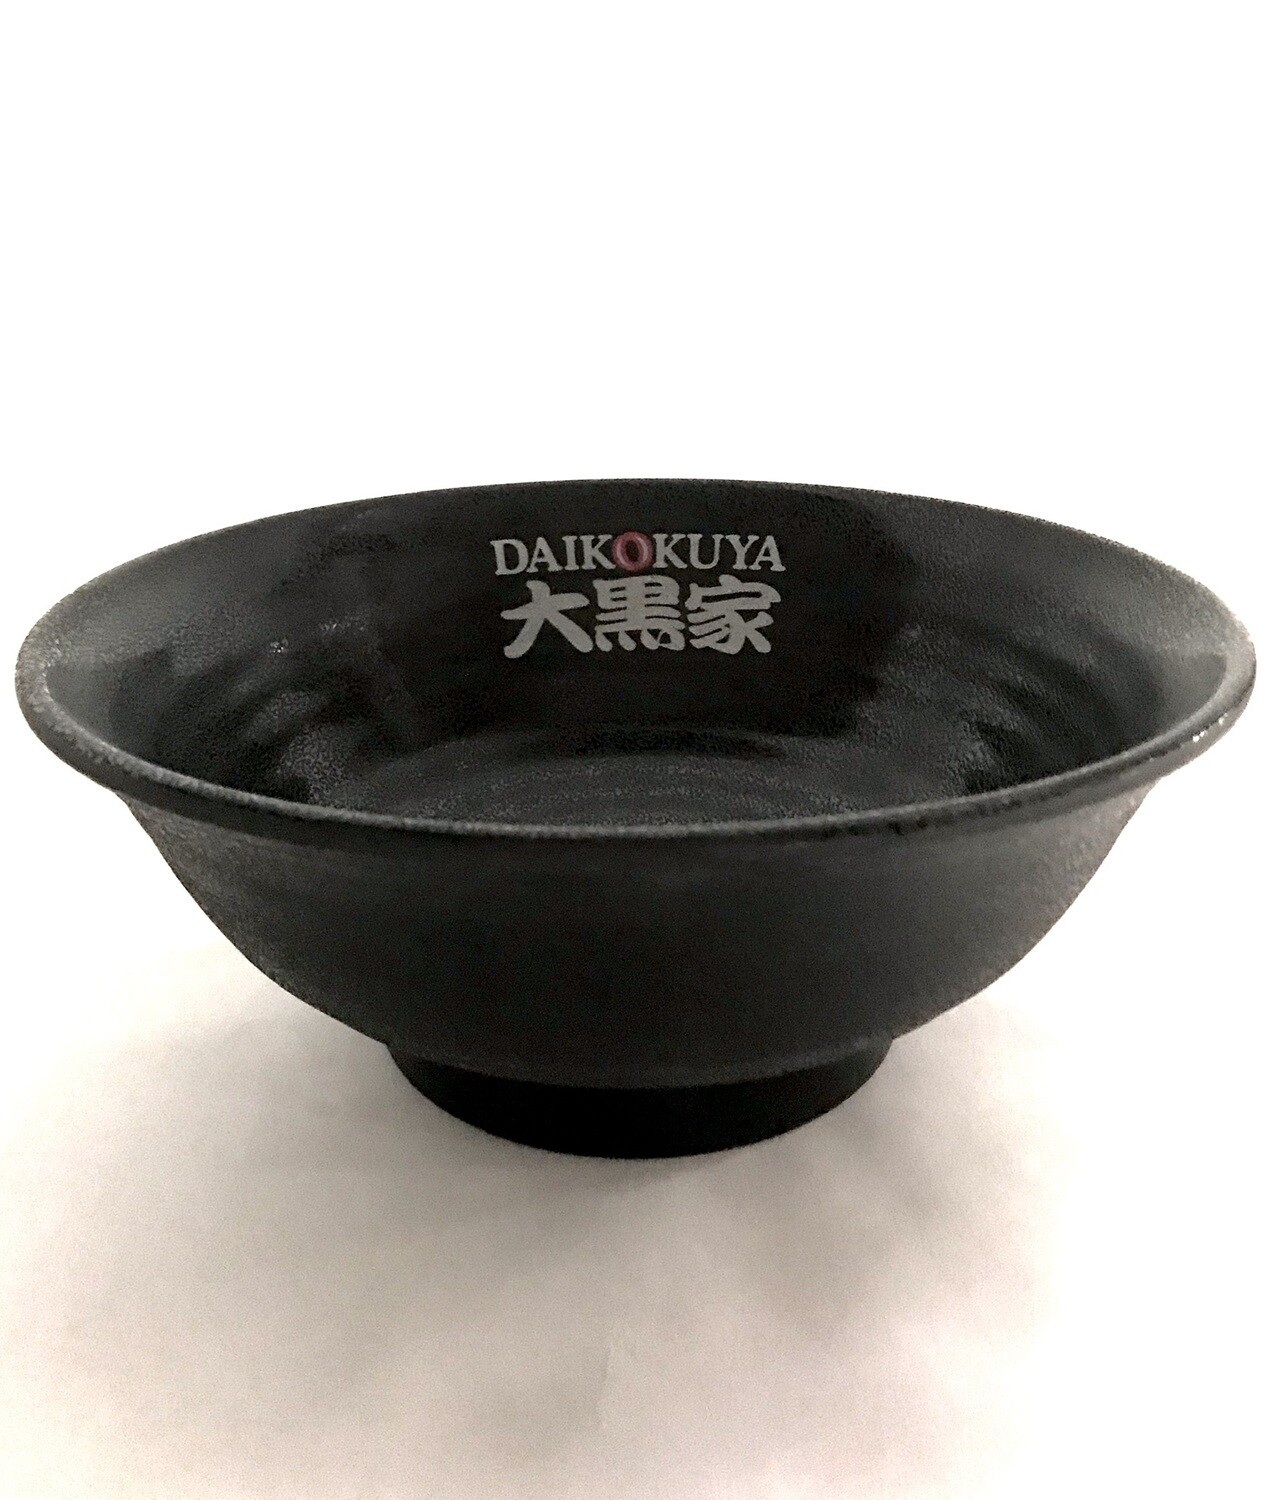 Daikokuya original Ramen bowl